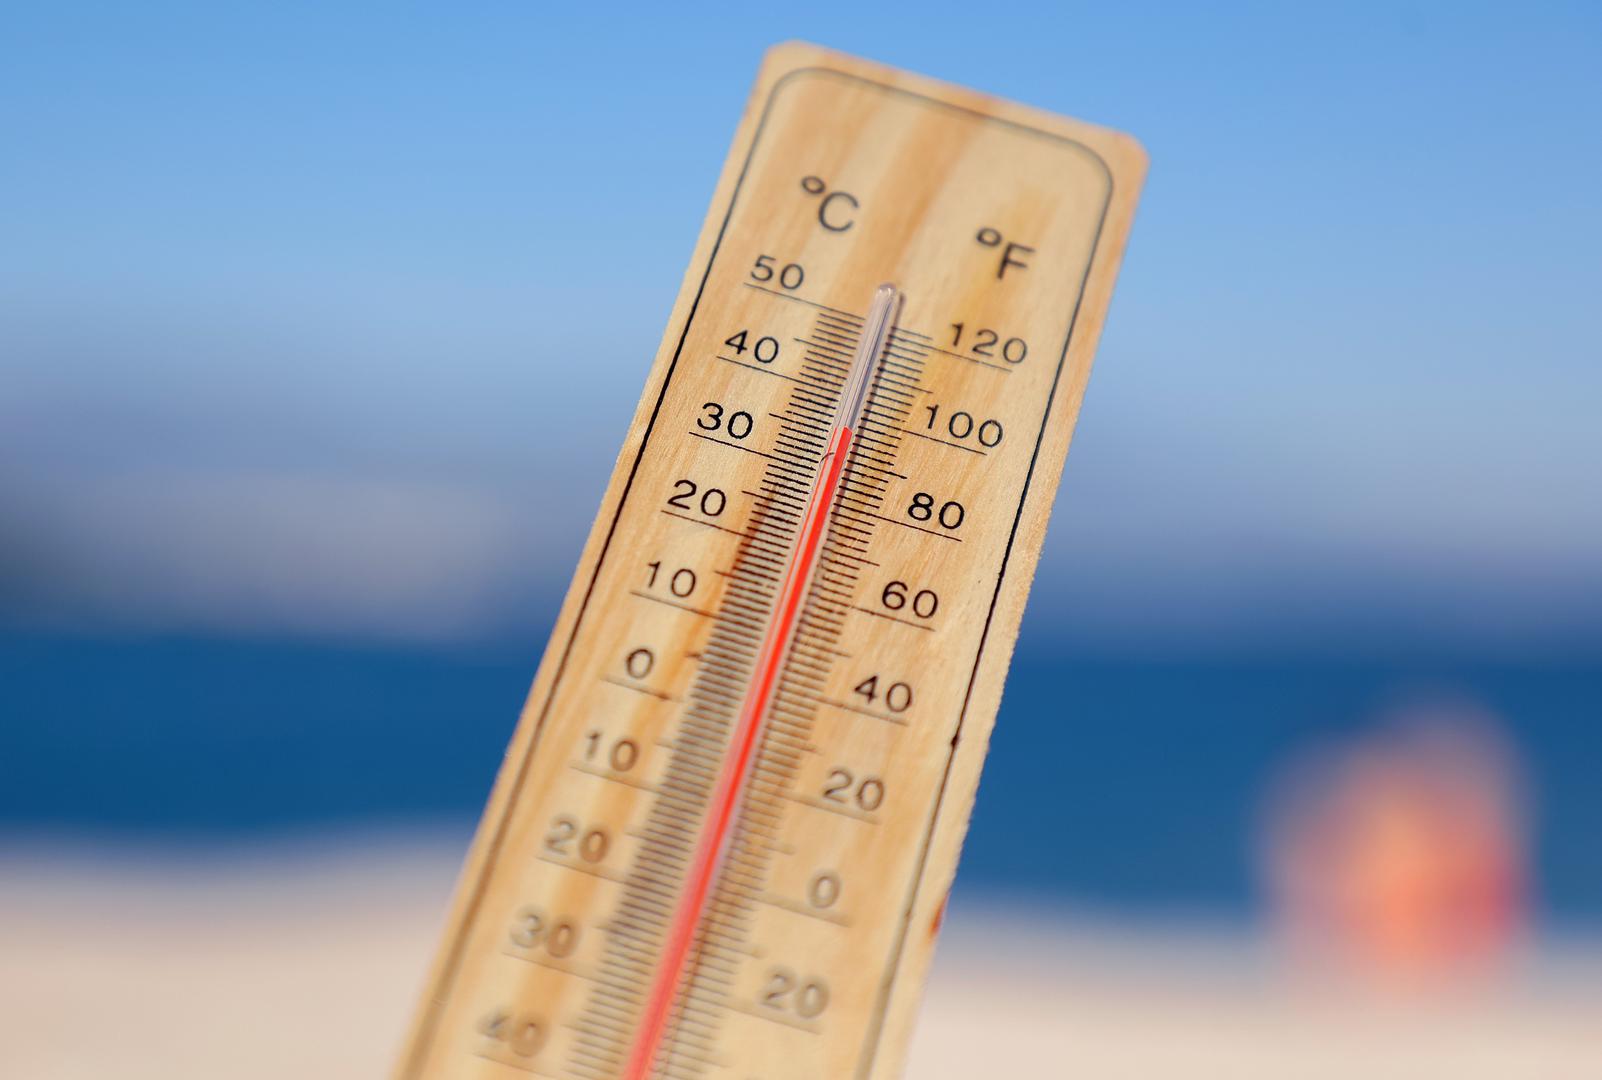 Pred nama je vrhunac prvog ovogodišnjeg toplinskog vala, a mnogi se pitaju jesu li i prije temperature bile toliko visoke ili se to događa samo posljednjih godina. Sudeći prema podacima DHMZ-a, ljeti smo se pržili otkad postoje mjerenja. Gotovo svi navedeni apsolutni maksimumi izmjereni su u srpnju i kolovozu, izuzetak je Virovitica gdje je apsolutni maksimum od 39,5 °C izmjeren 27. lipnja 1965. 